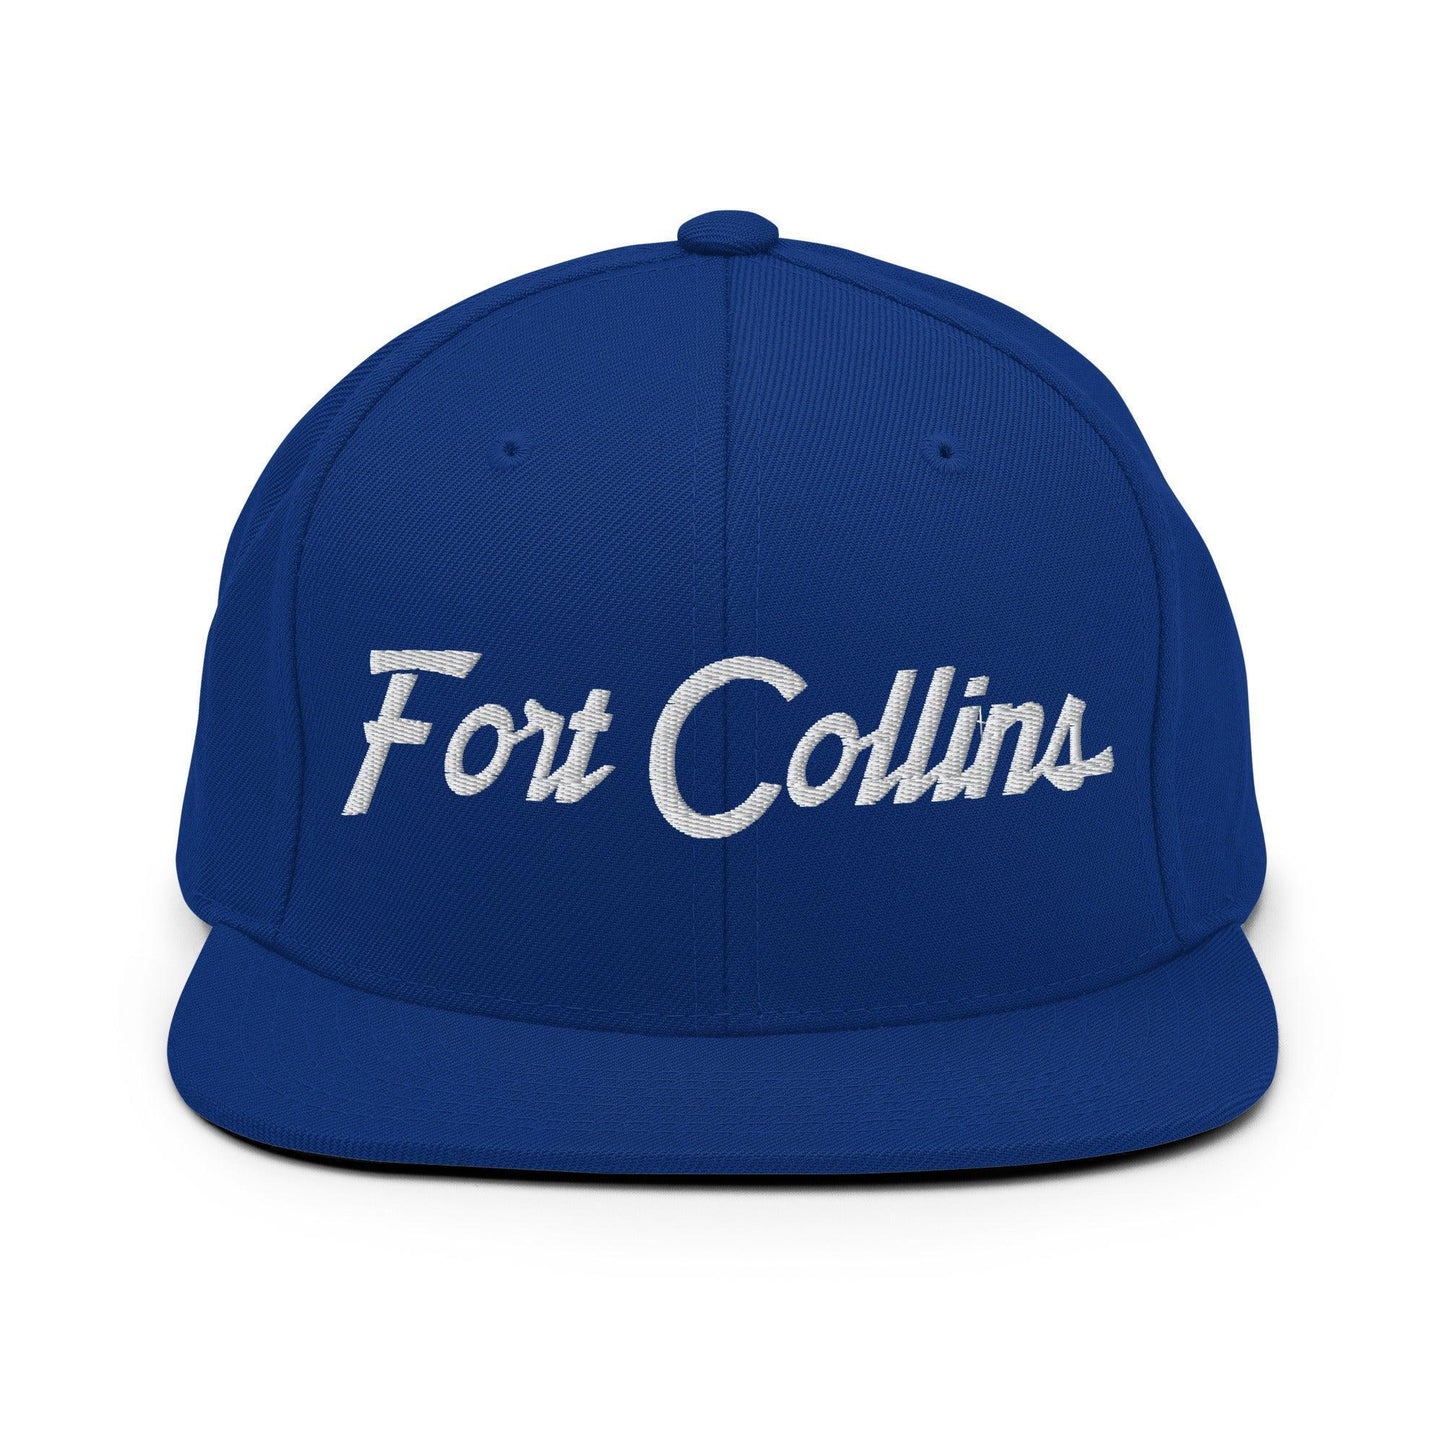 Fort Collins Script Snapback Hat Royal Blue